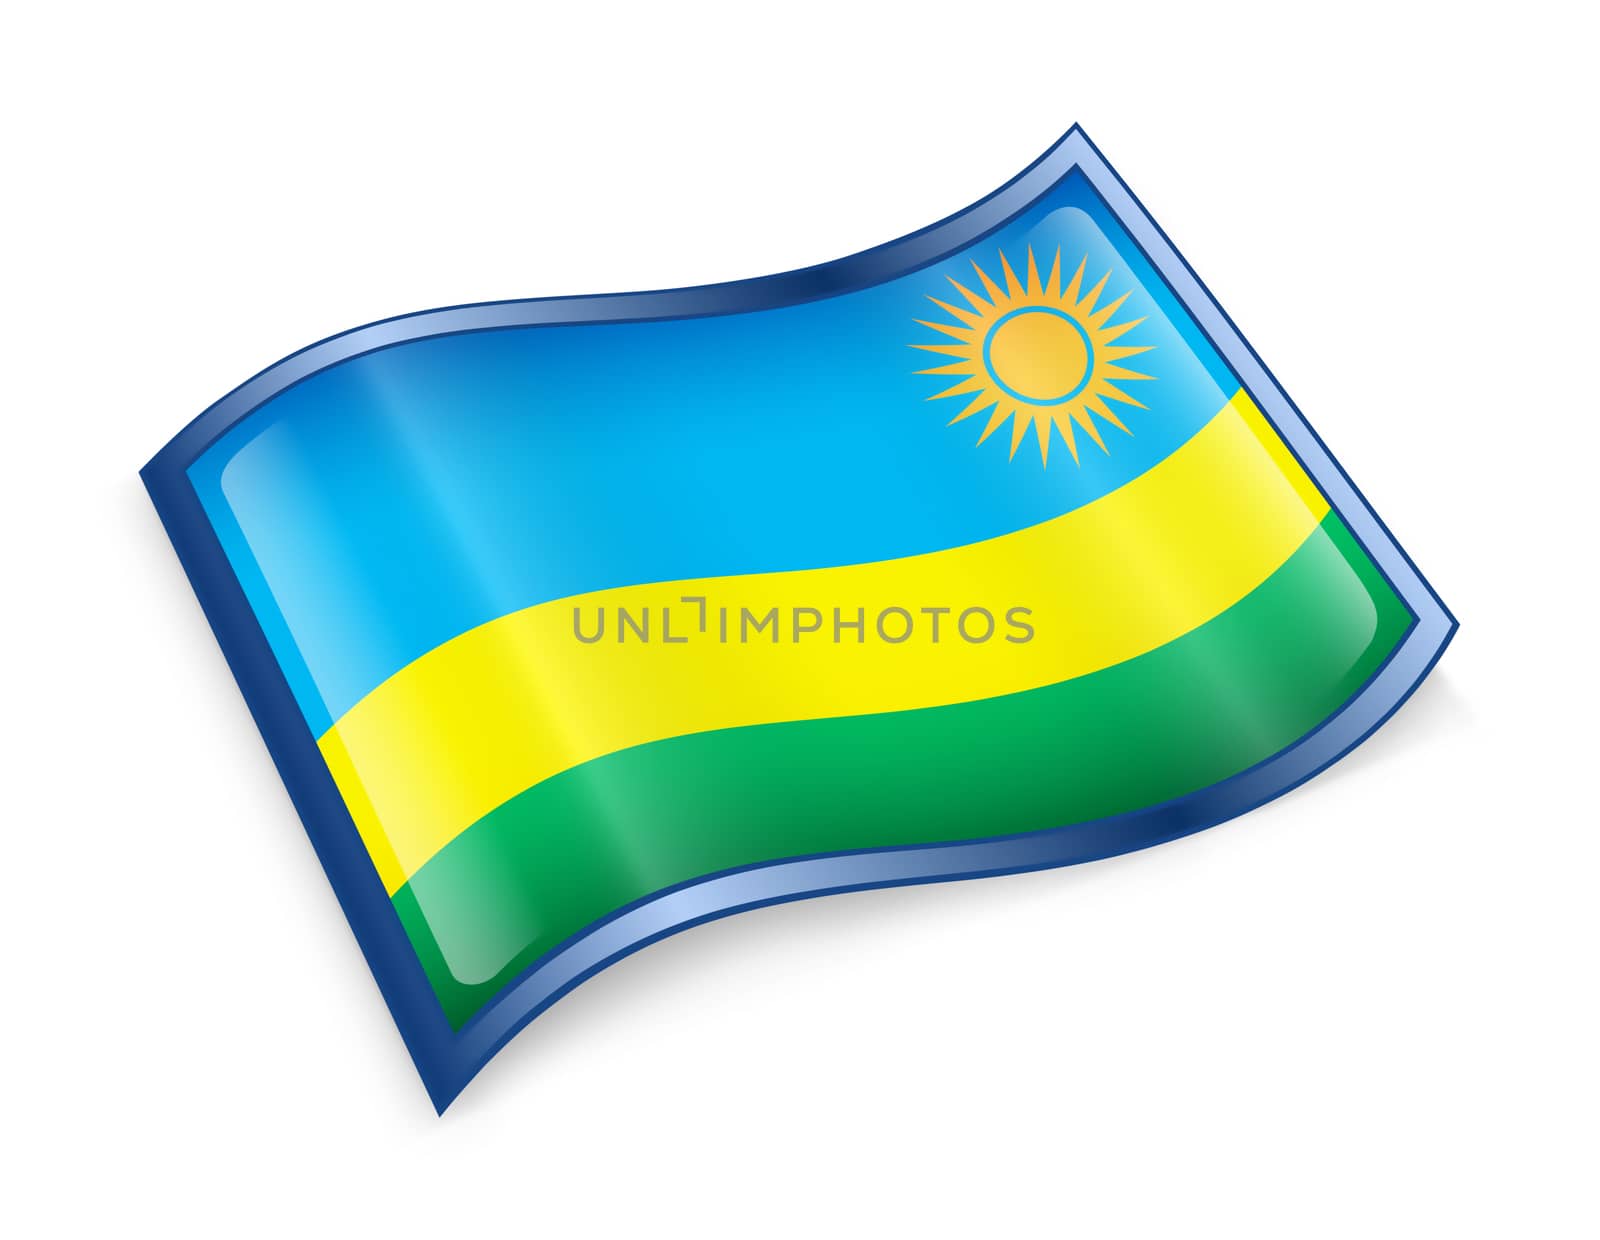 Rwandan flag icon, isolated on white background